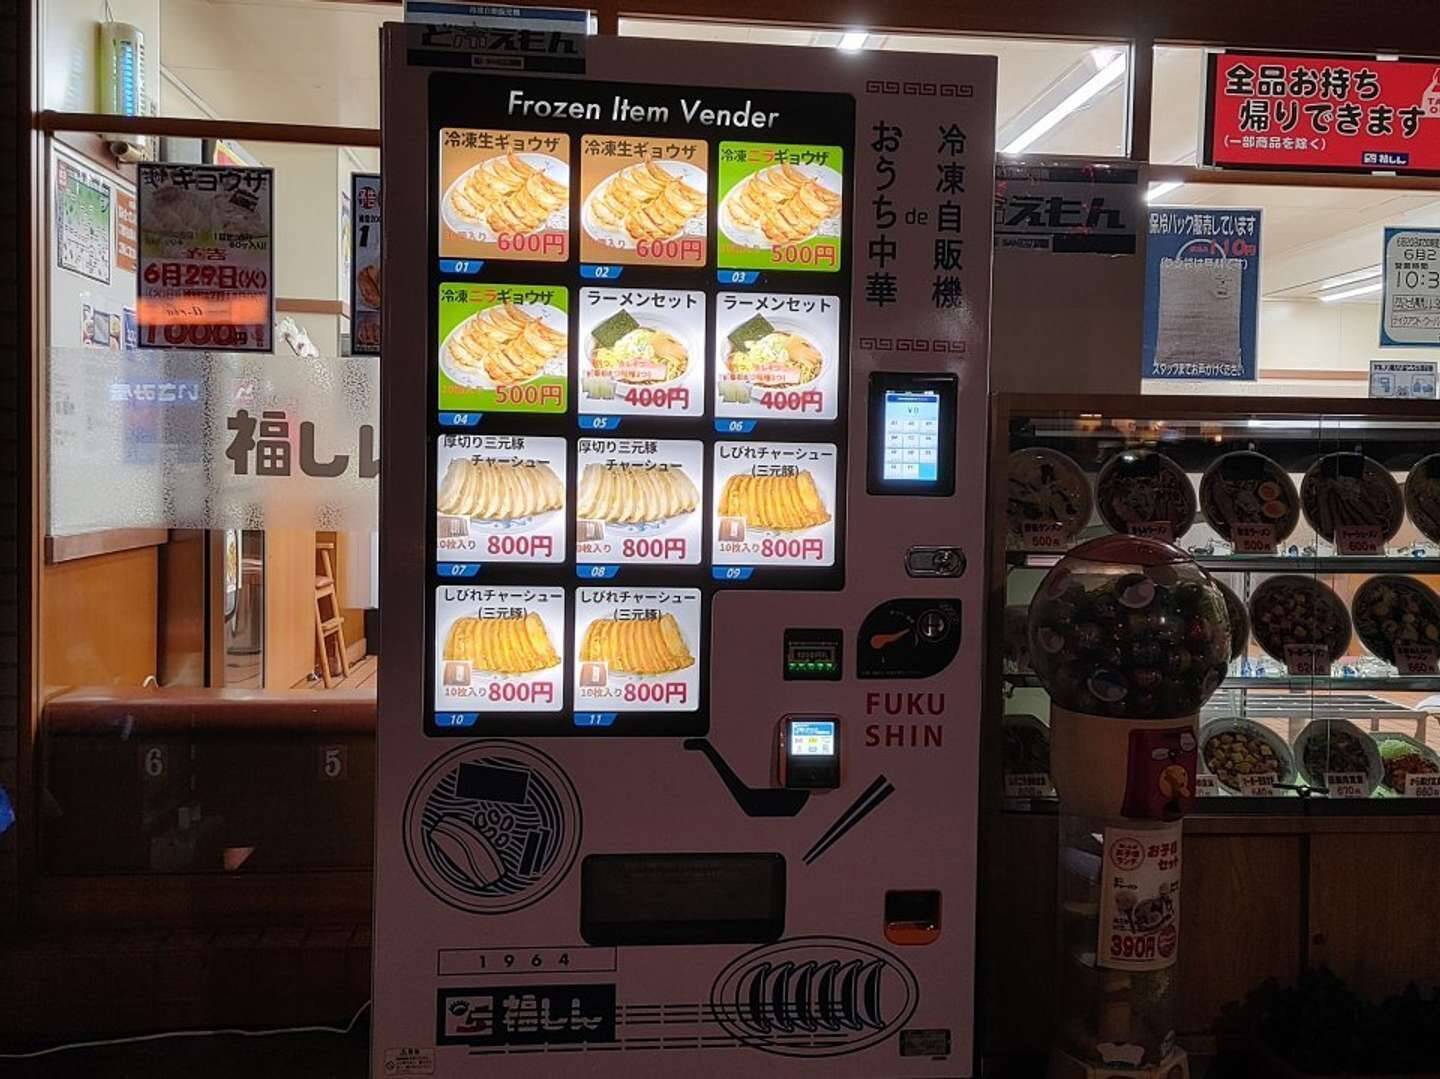 本格チャーシューが24時間買えるぞ 中華チェーン 福しんの 冷凍自販機 が嬉しすぎる 21年6月28日 エキサイトニュース